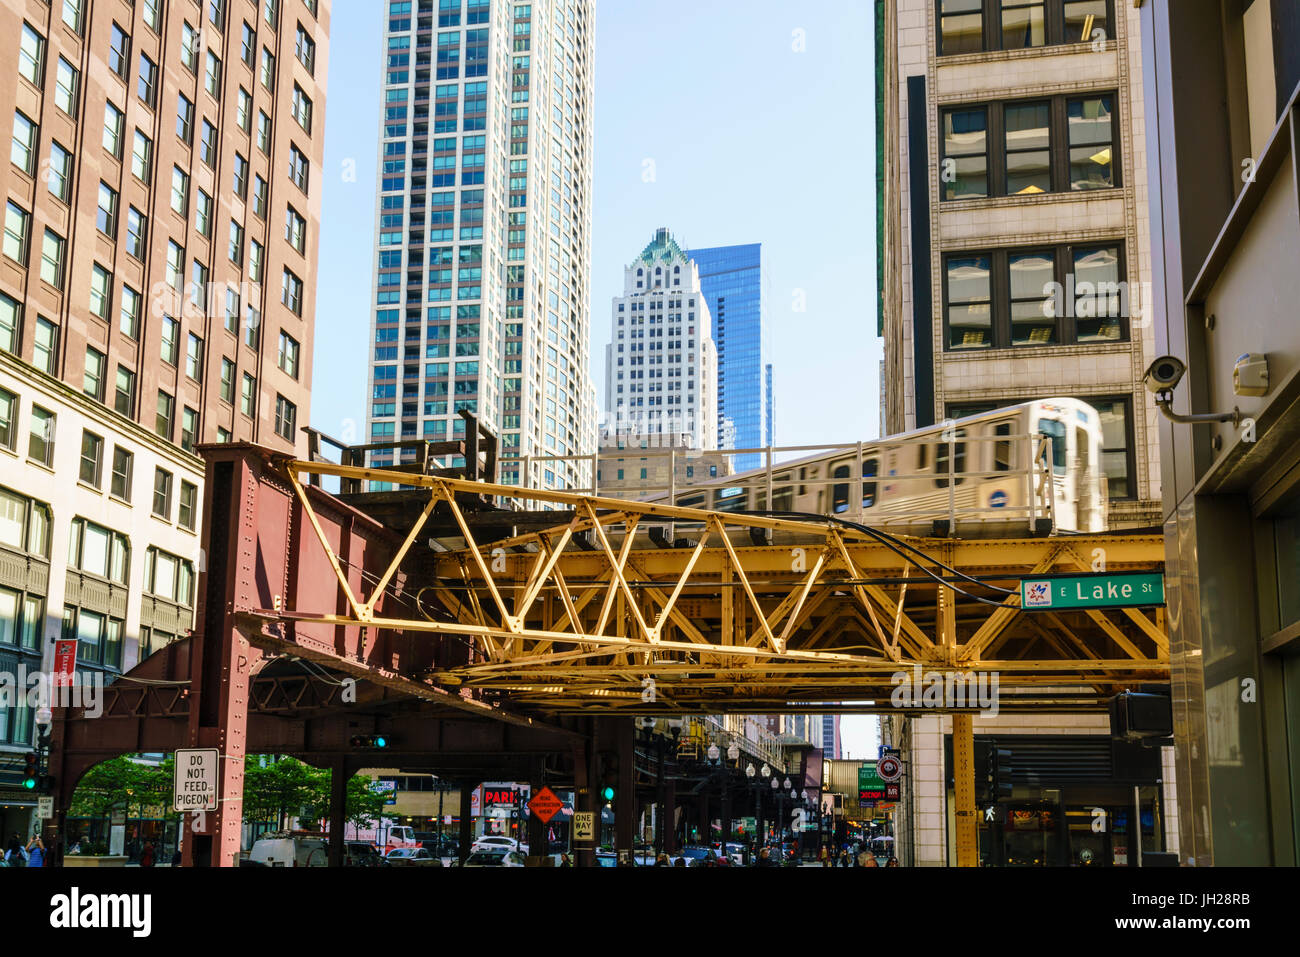 Train CTA sur la boucle de raccordement qui s'étend au-dessus du sol dans le centre-ville de Chicago, Illinois, États-Unis d'Amérique, Amérique du Nord Banque D'Images